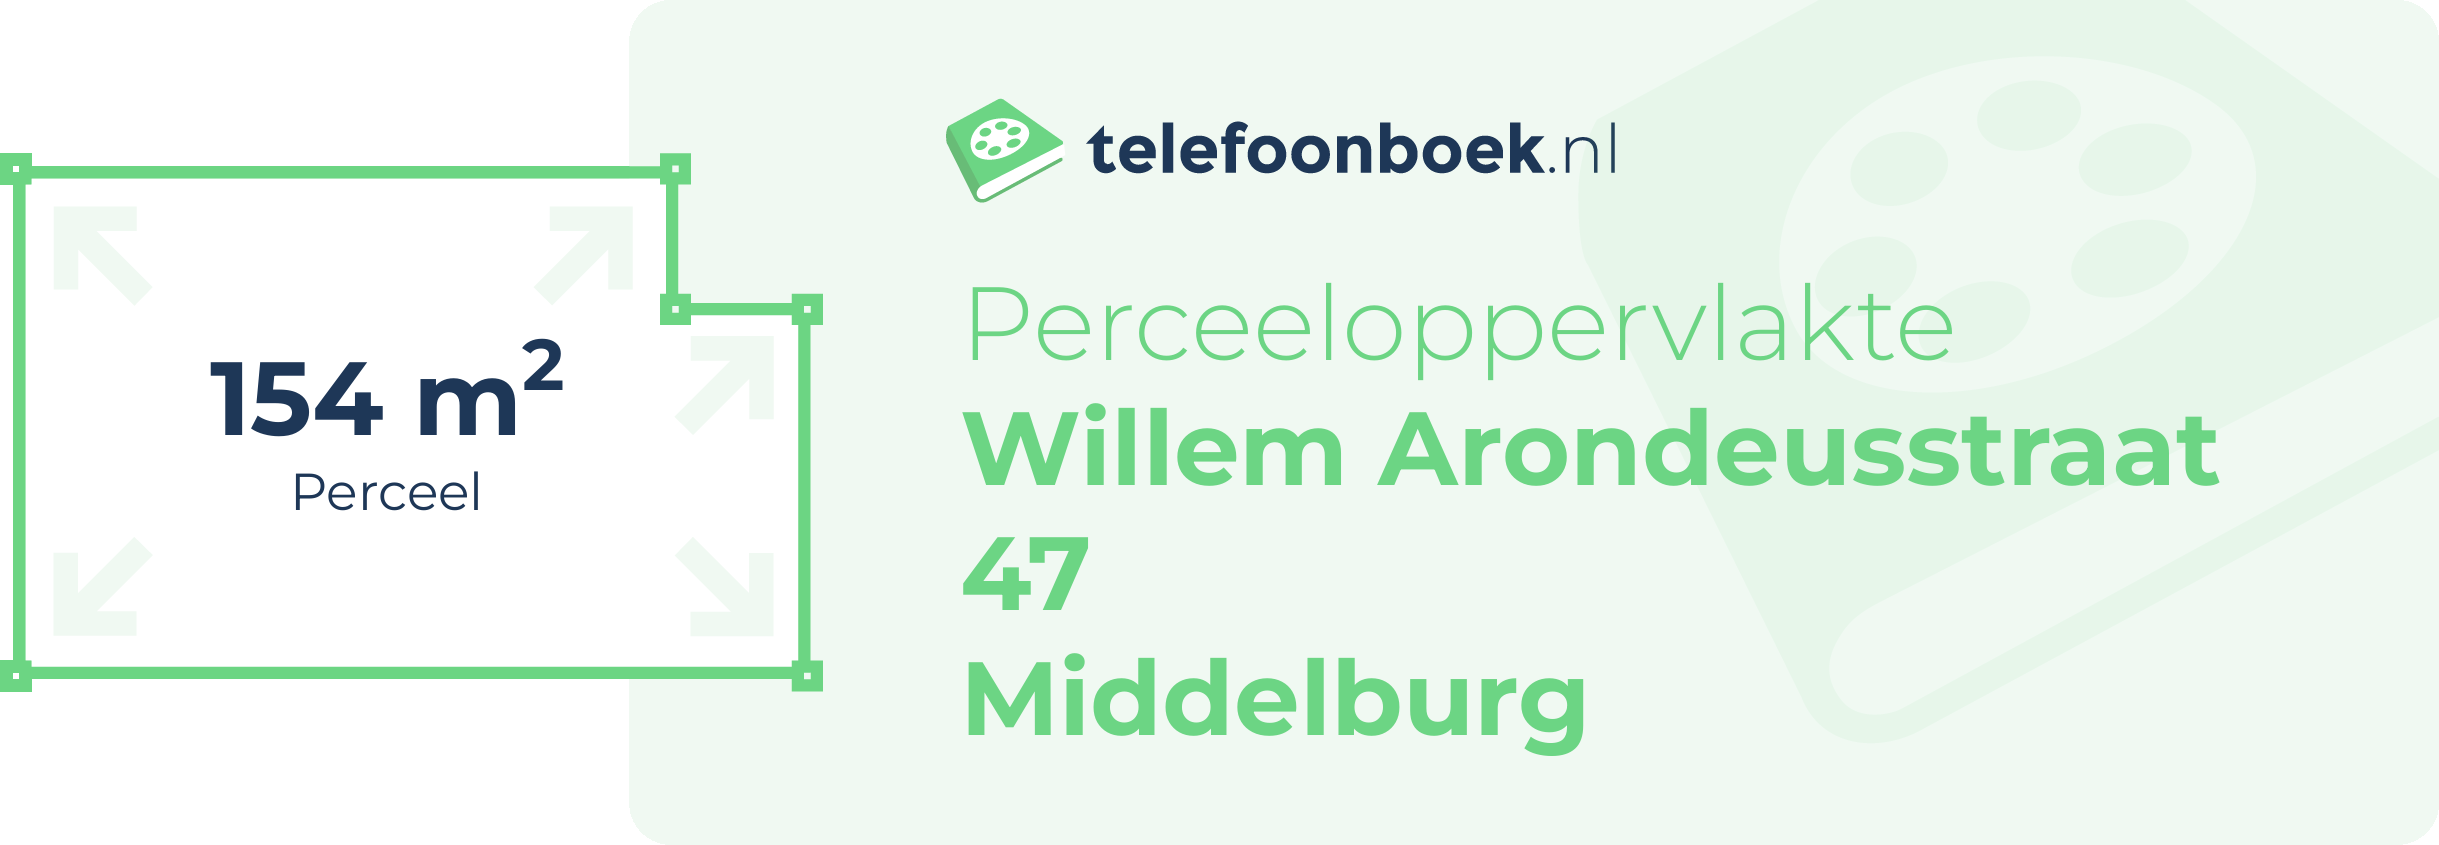 Perceeloppervlakte Willem Arondeusstraat 47 Middelburg